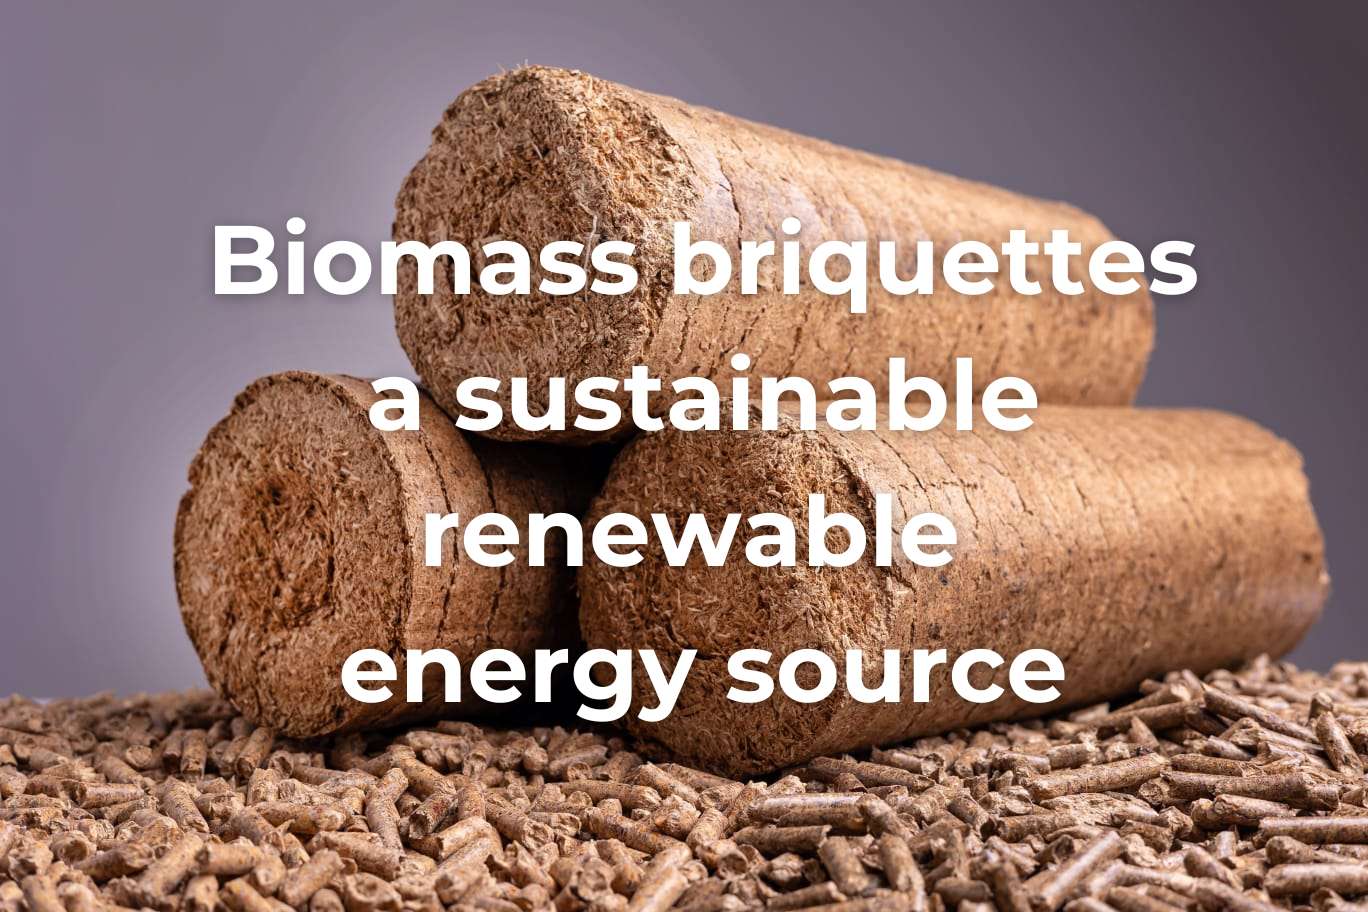 biomass-briquettes-a-sustainable-renewable-energy-source